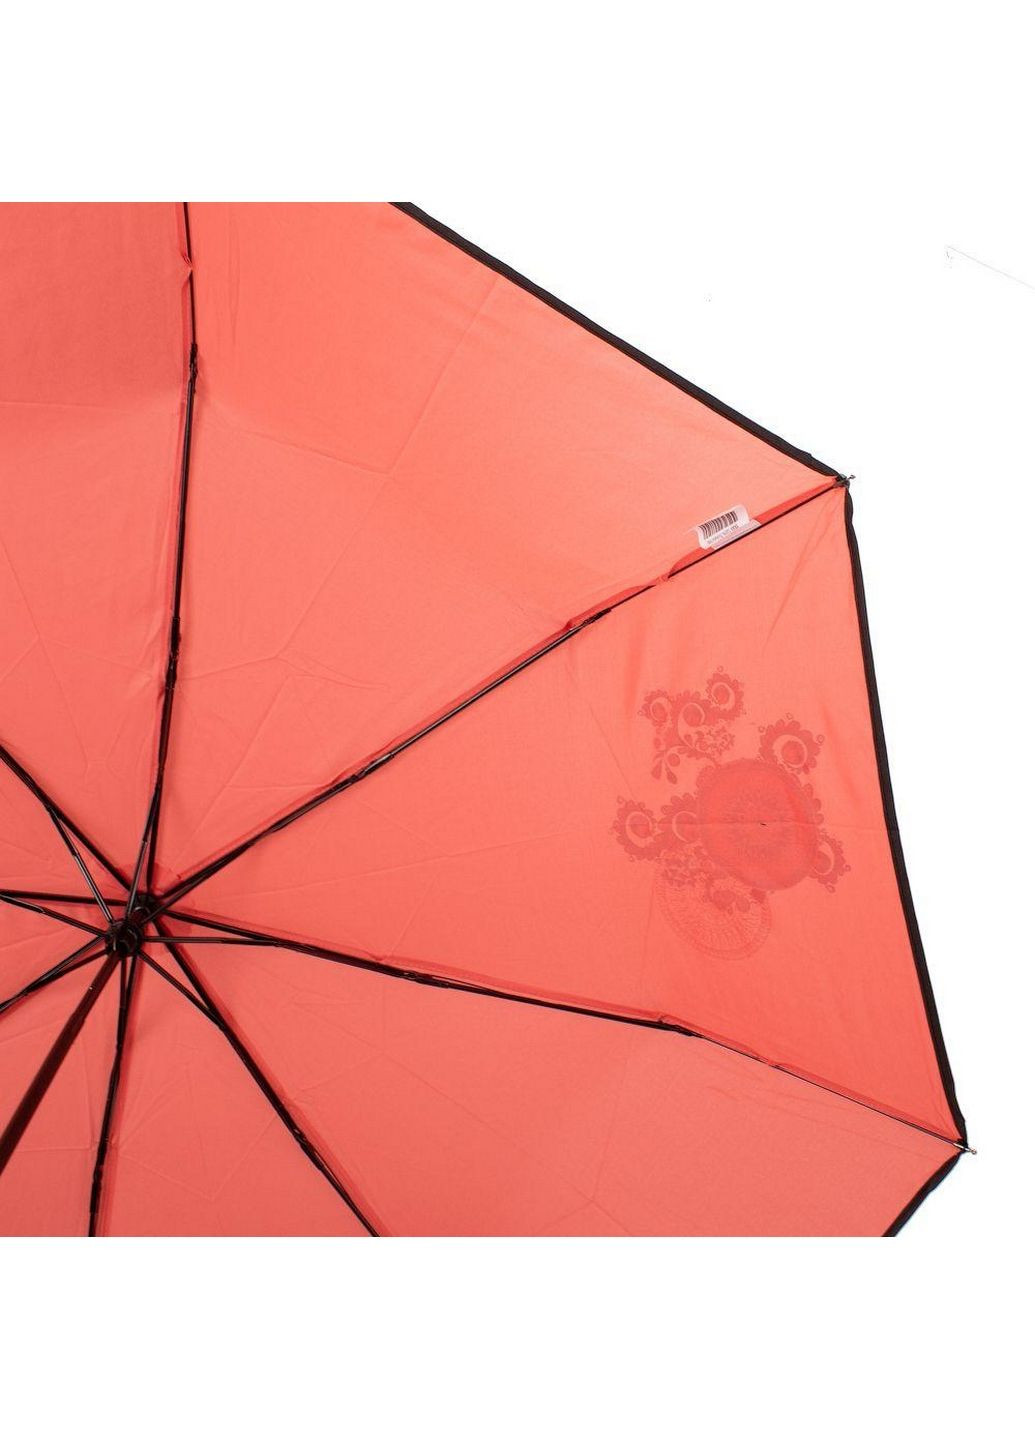 Женский складной зонт механический Art rain (282594655)